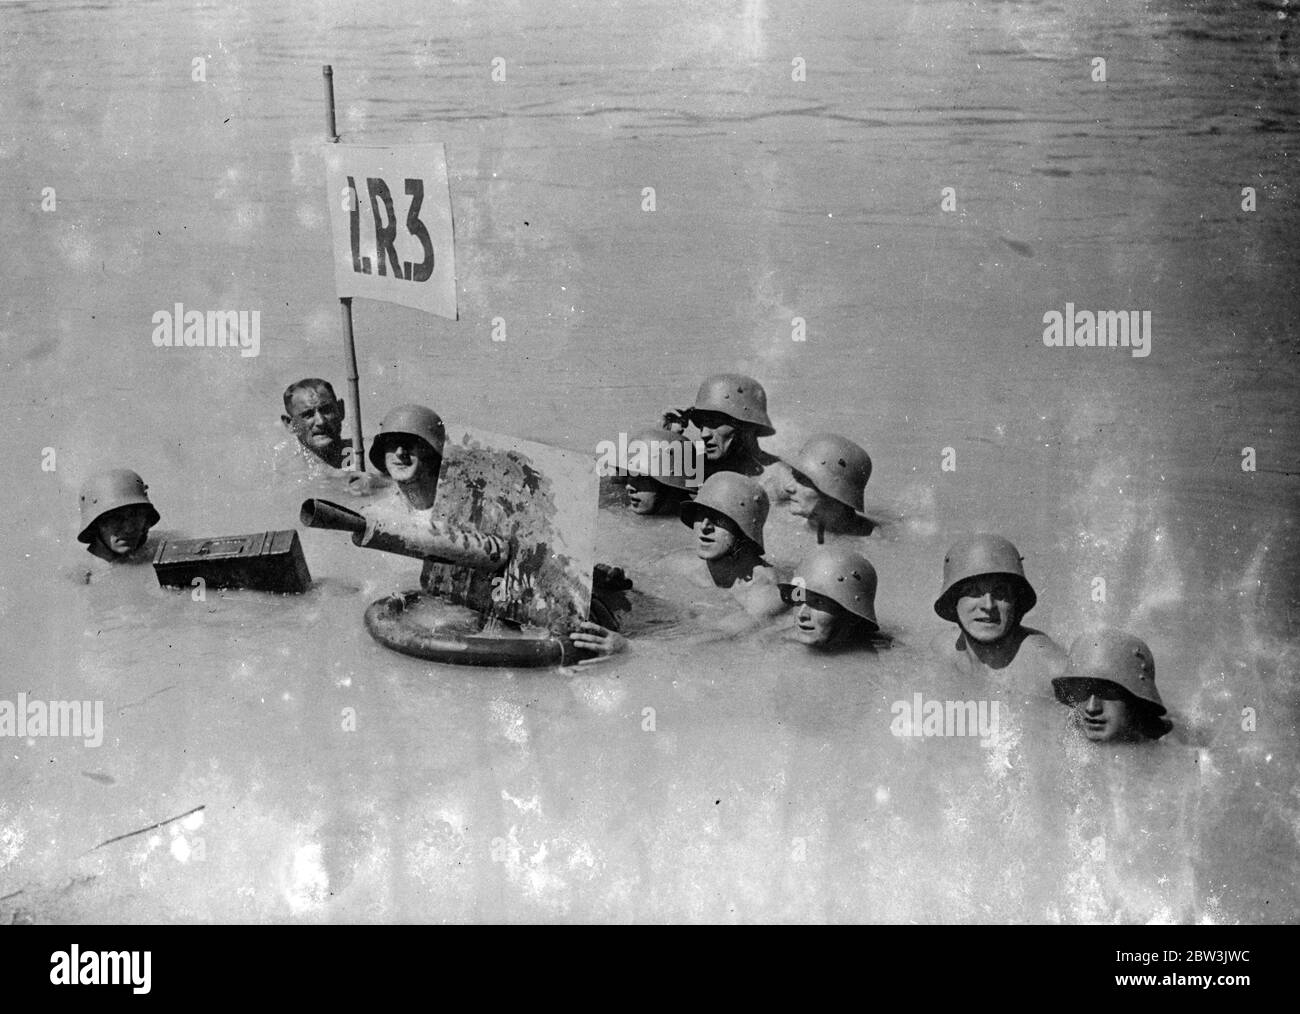 Australische Truppen Verwenden Schwimmende Maschine - Gun . Kanonier Schwimmen In Stahl - Helme . Eine Demonstration, wie eine Maschinenpistole von durch Wasser schwimmenden Truppen bedient werden kann, wurde in Wien gezeigt. Die Maschine - Pistole ist auf einem Gummischwimmer montiert , Munition in einem Wasser - Proof Fall enthalten . Foto zeigt : Stahl - Helmeted österreichischen Maschine - Gunners Betrieb ihre Waffe, wie sie schwimmen . Juli 1936 Stockfoto